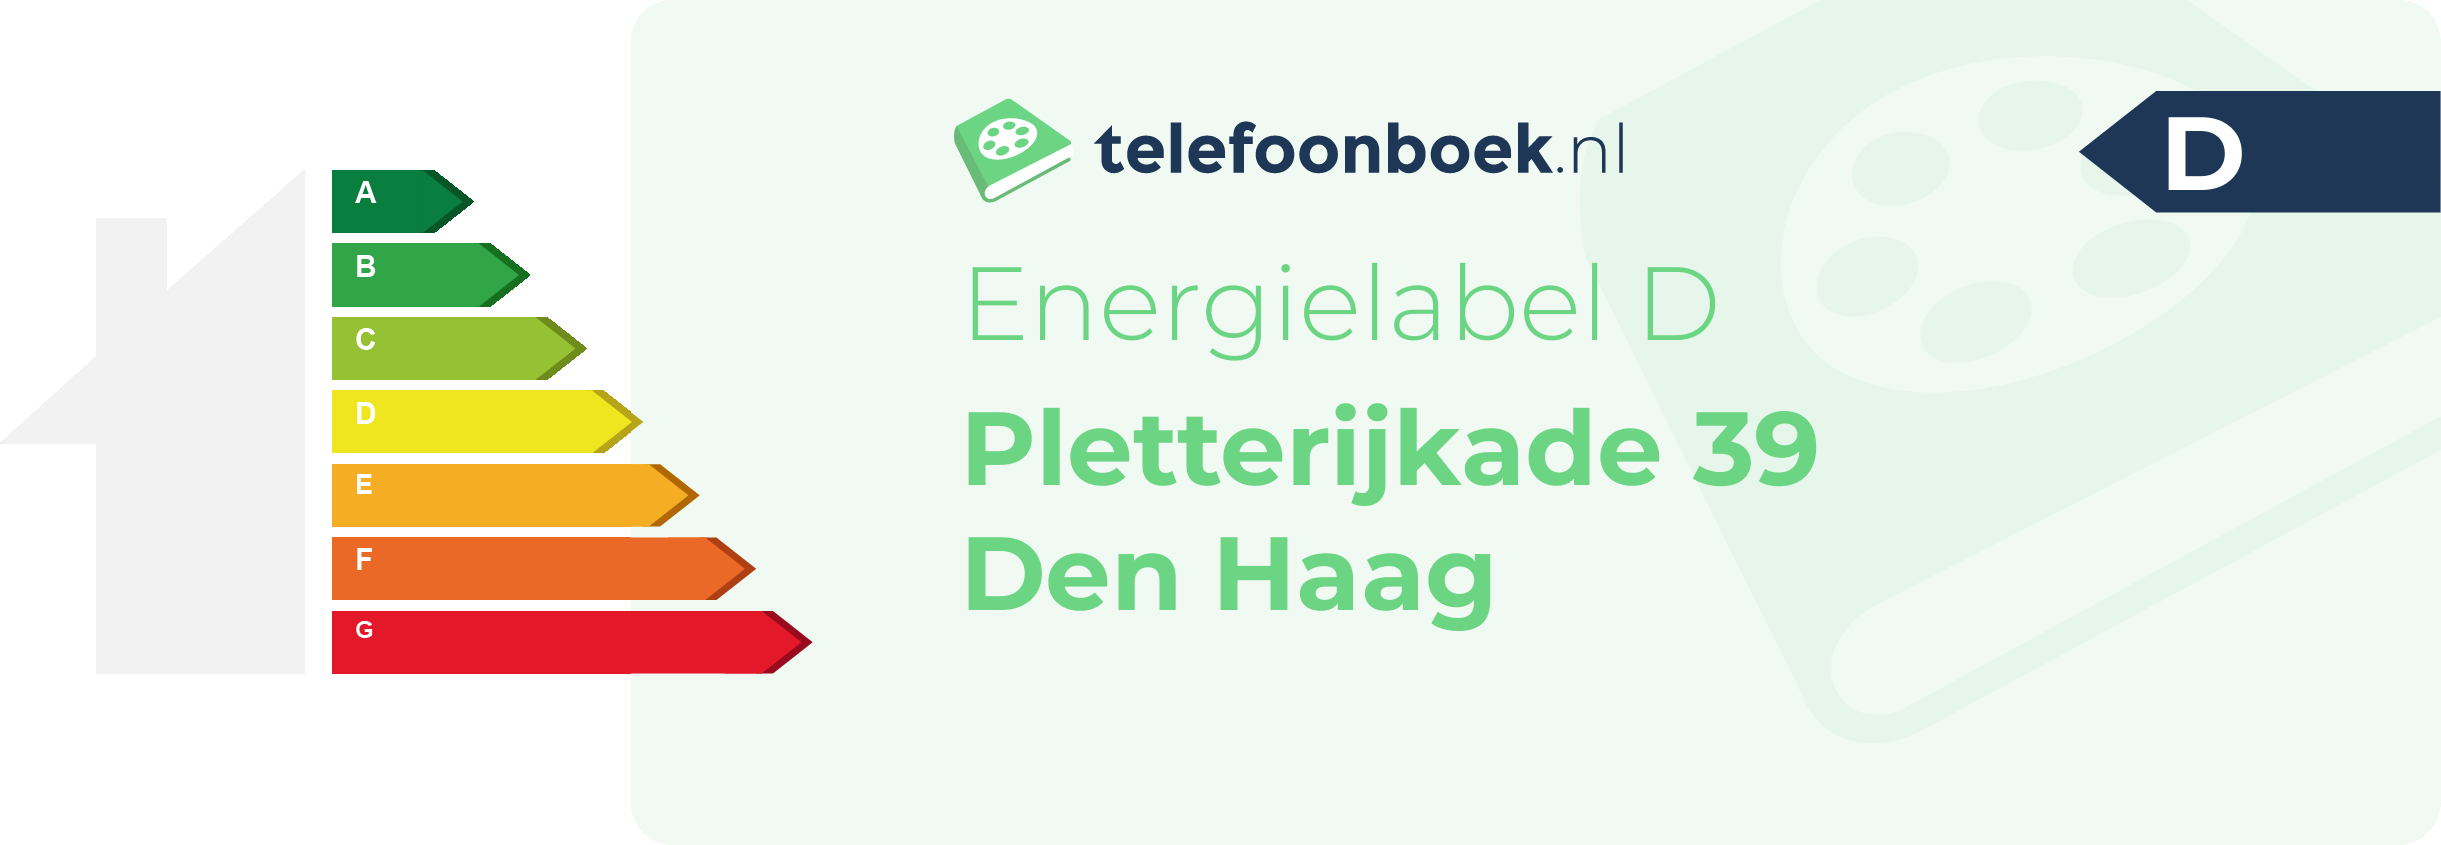 Energielabel Pletterijkade 39 Den Haag